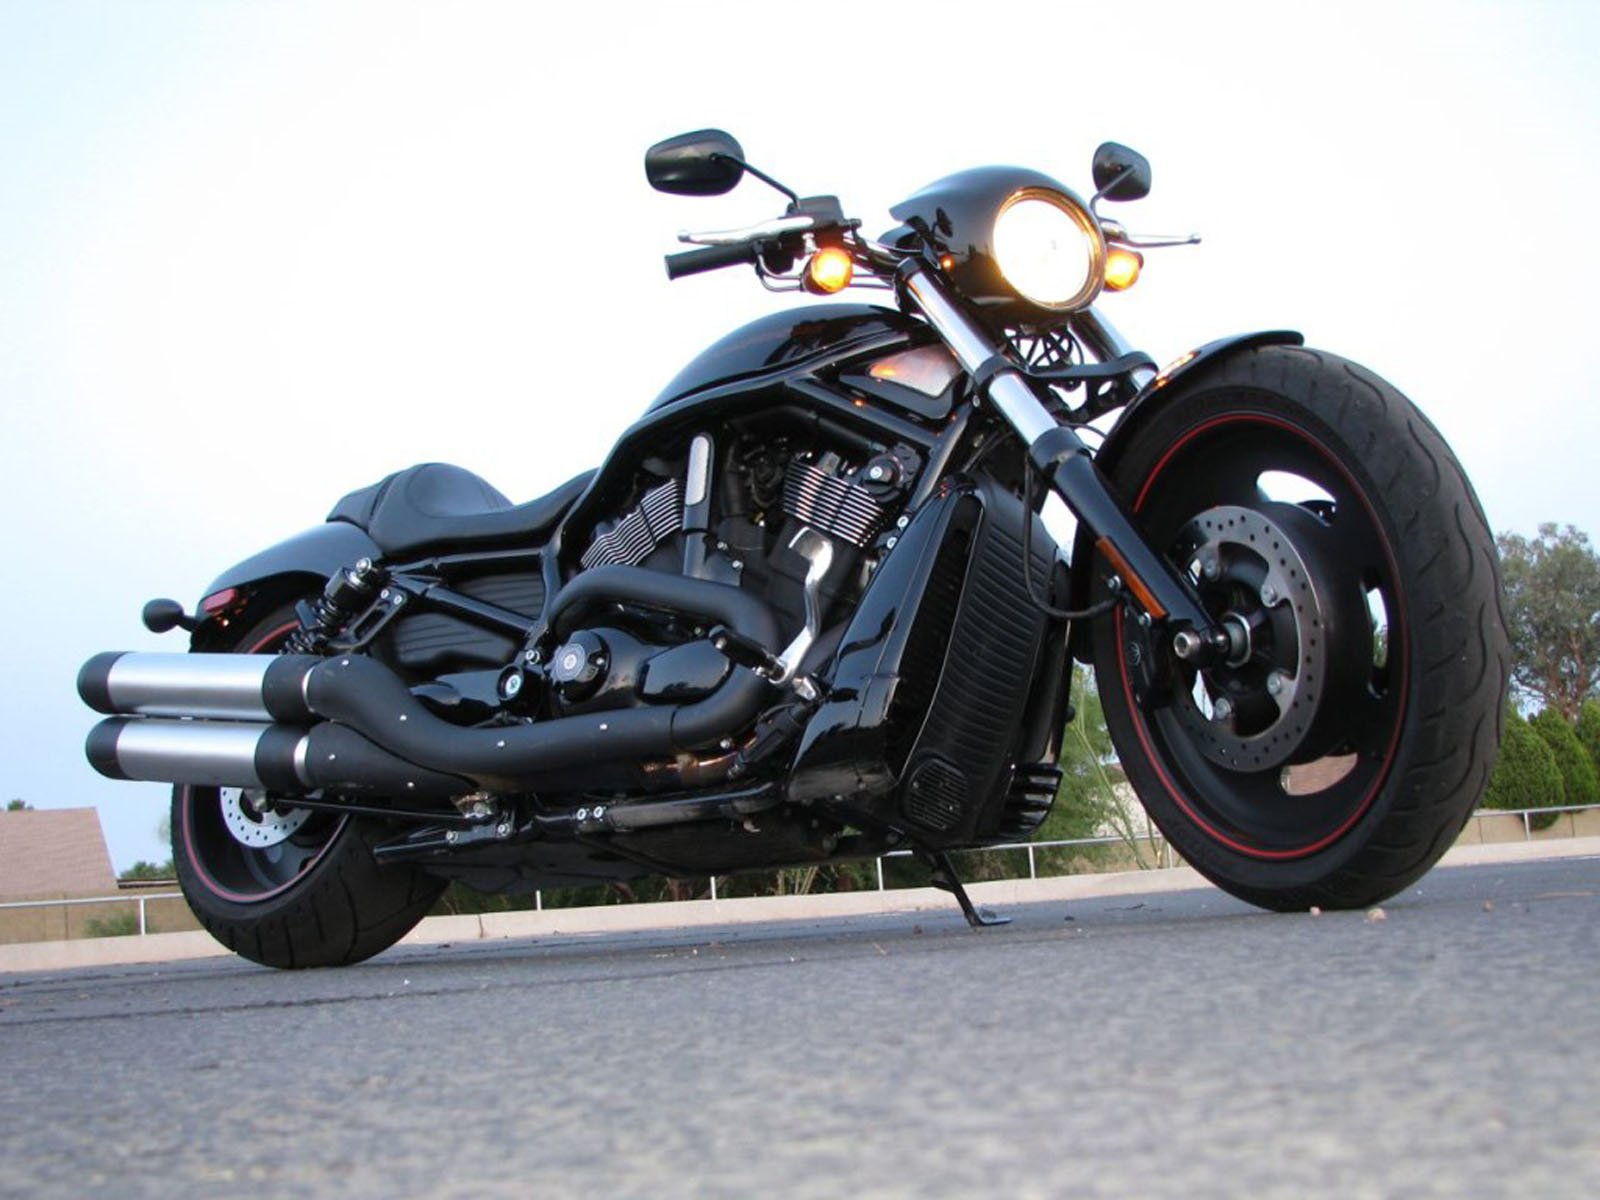 75+] Harley Davidson Bikes Wallpapers - WallpaperSafari